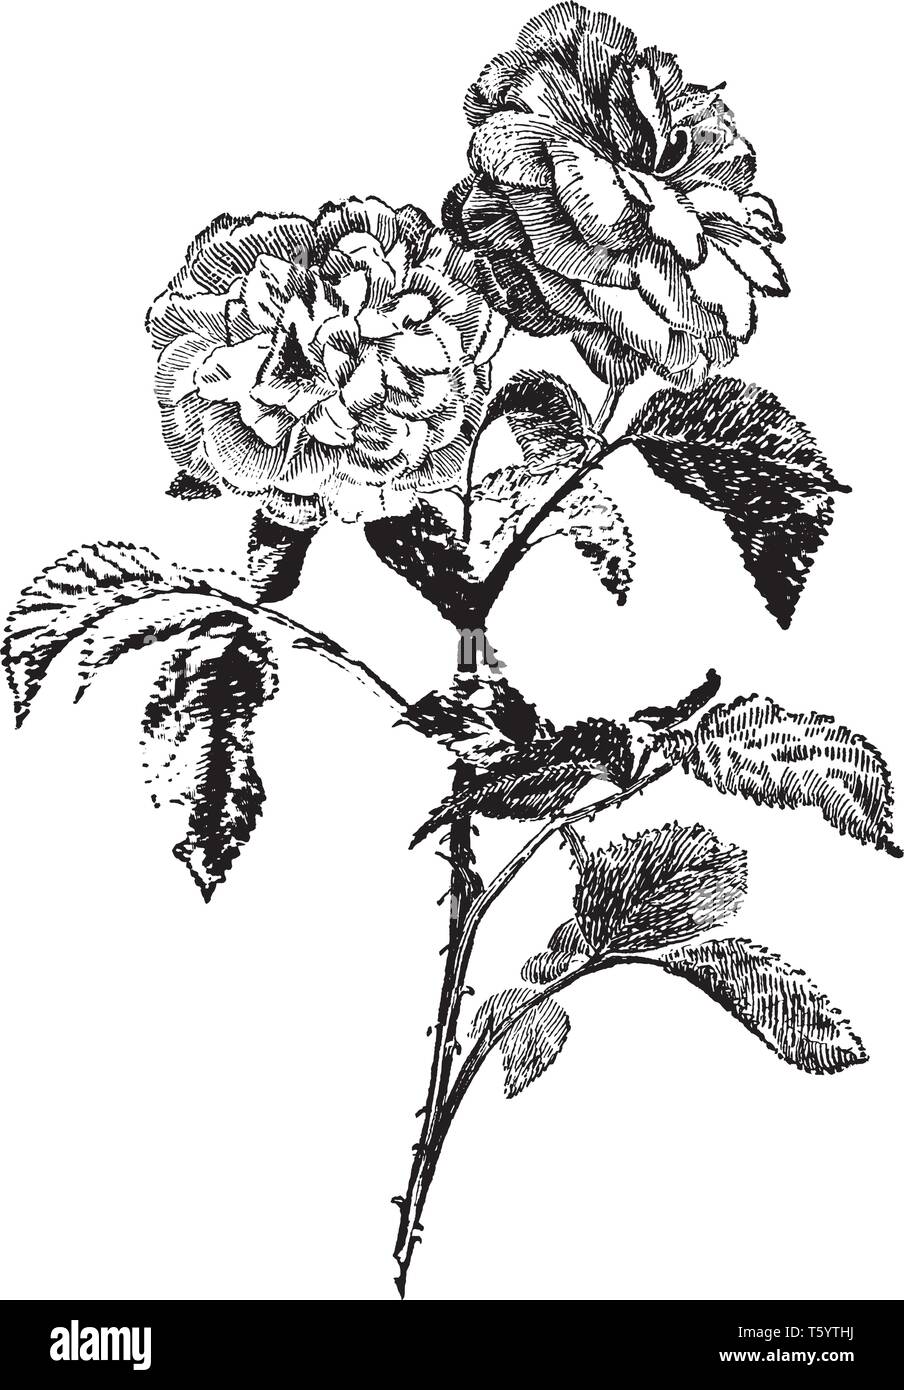 Questa immagine contiene uno stelo con due fiori, è chiamato come jules margottin, vintage disegno della linea di incisione o illustrazione. Illustrazione Vettoriale